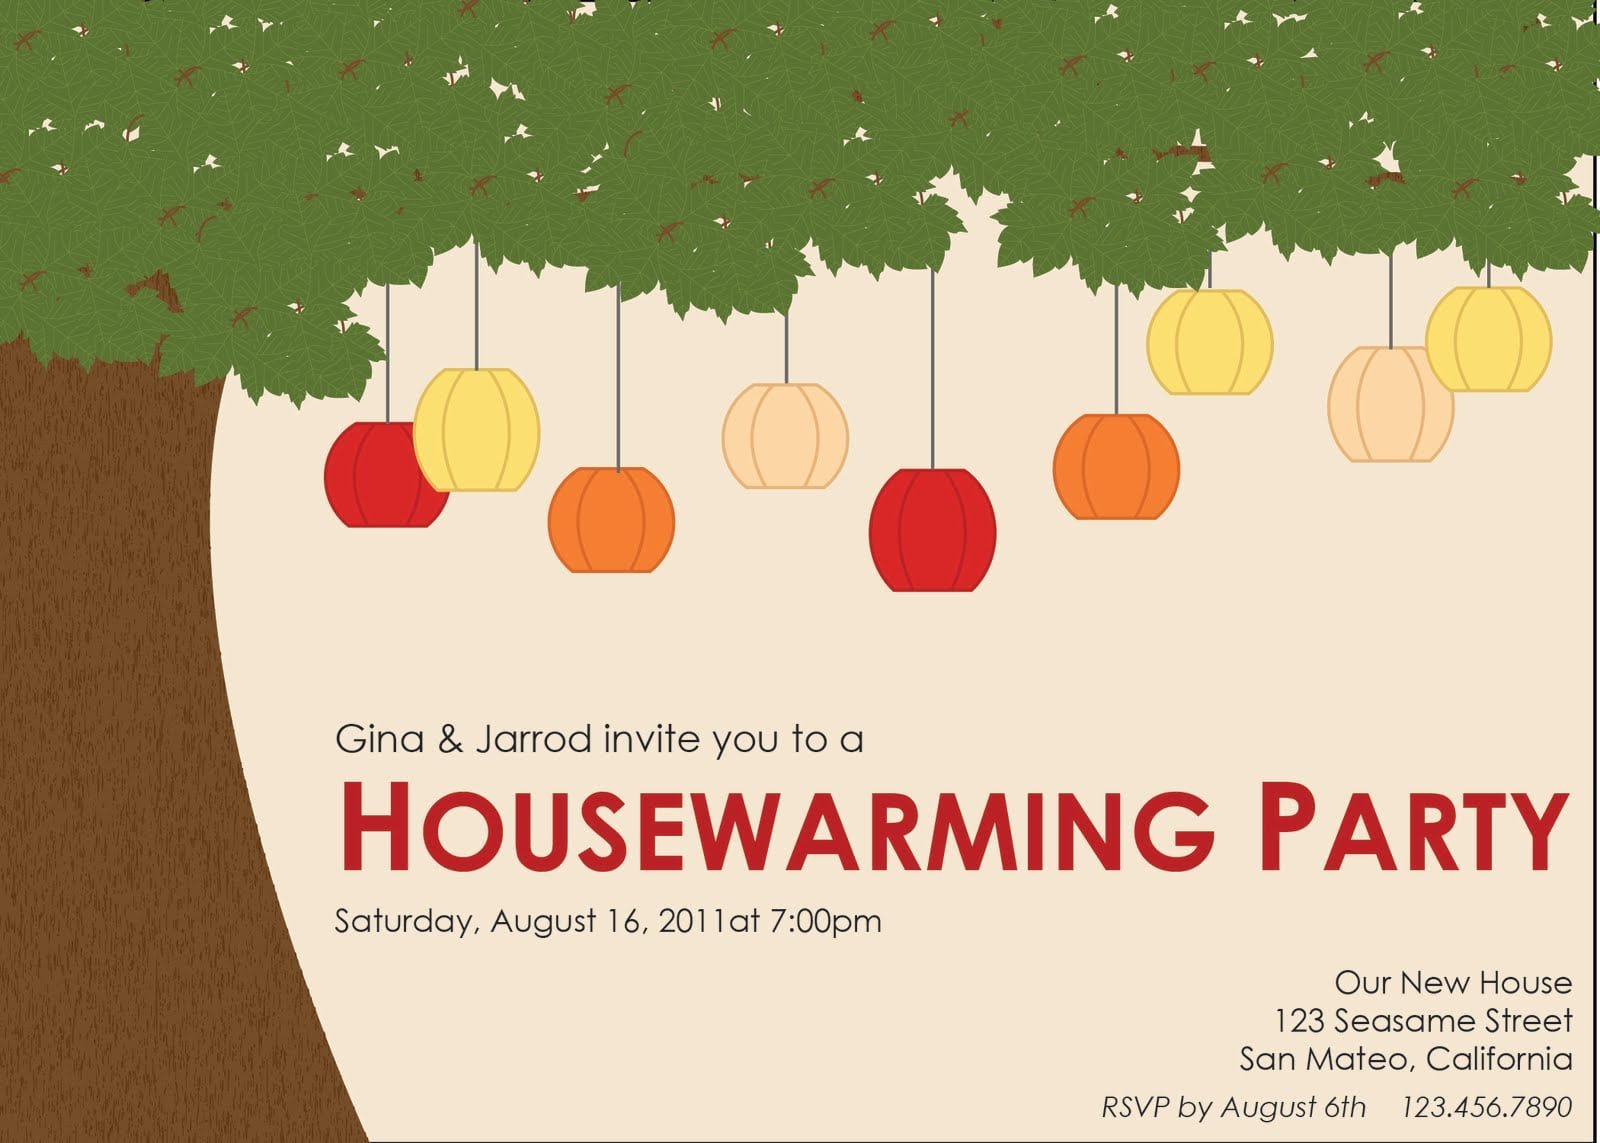 Home invite. Housewarming Invitation. Invite to House warming Party. Housewarming Party картинка.